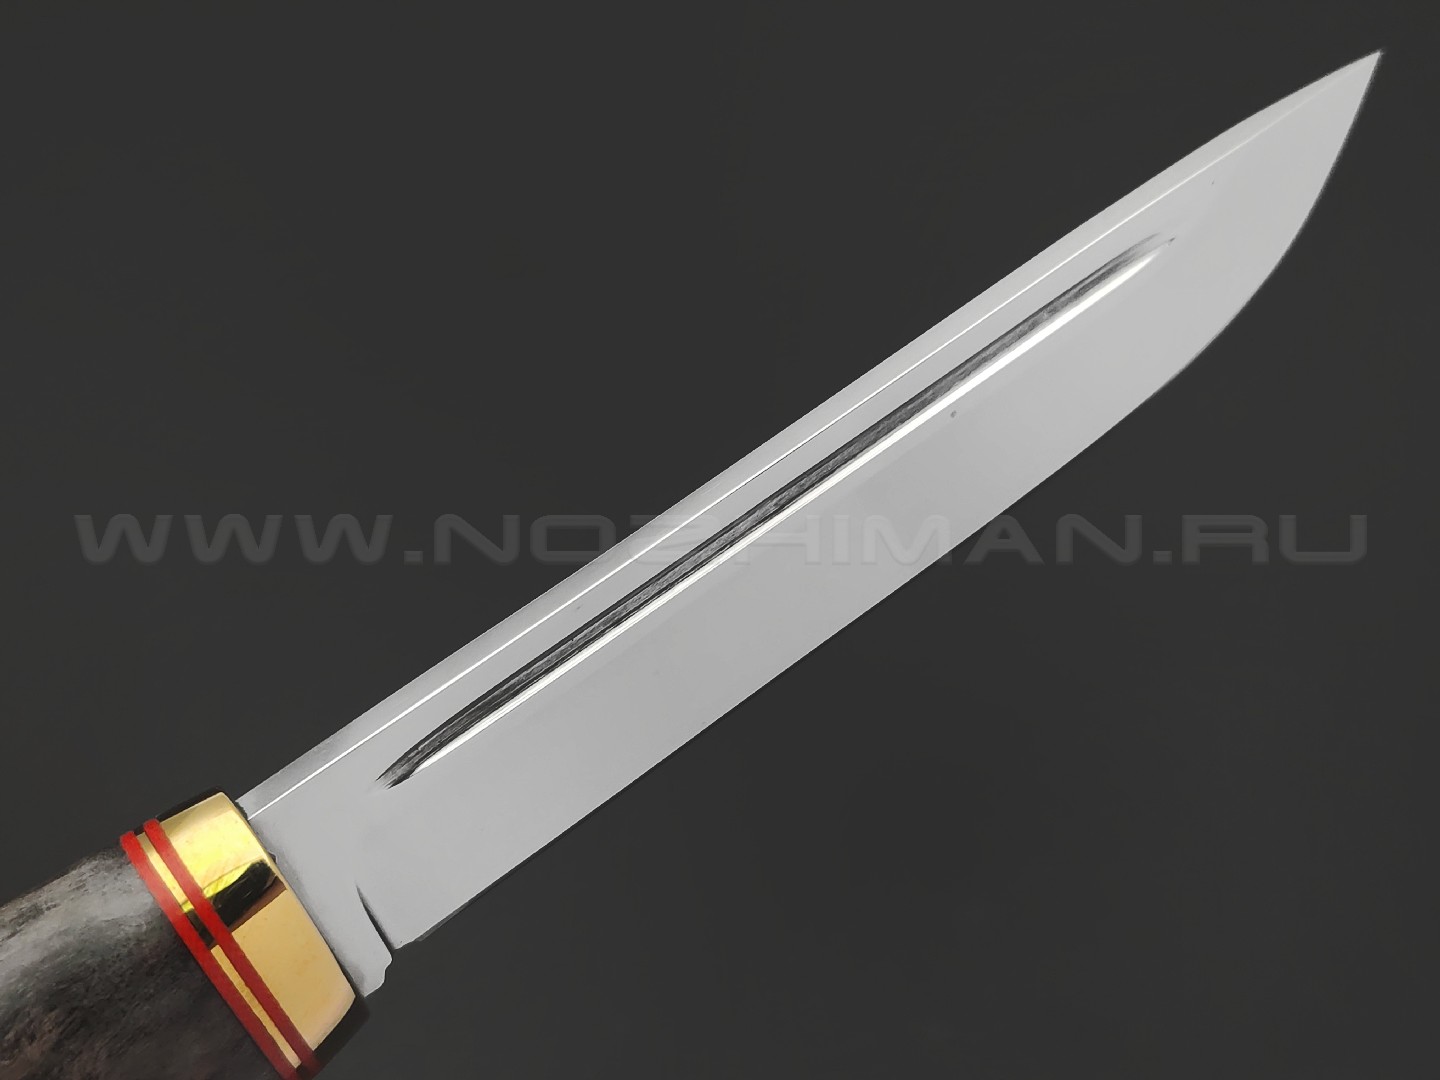 Товарищество Завьялова нож Финский сталь K340, рукоять Карельская береза коричневая, латунь